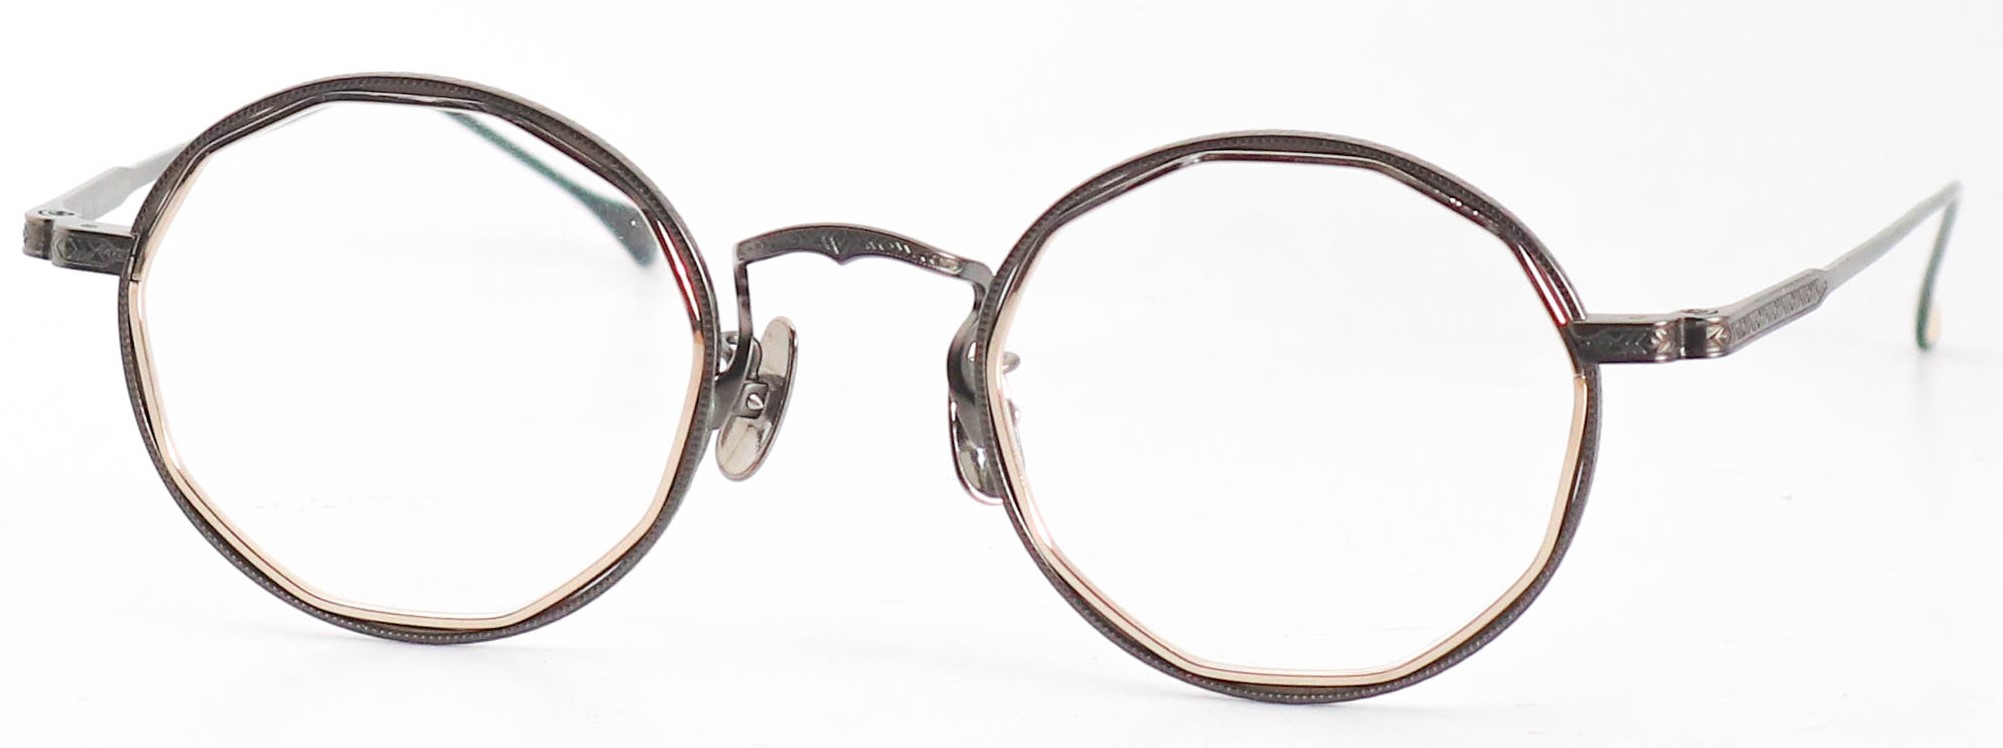 眼鏡のカラータイプC-4 Gold/Gray-Matt